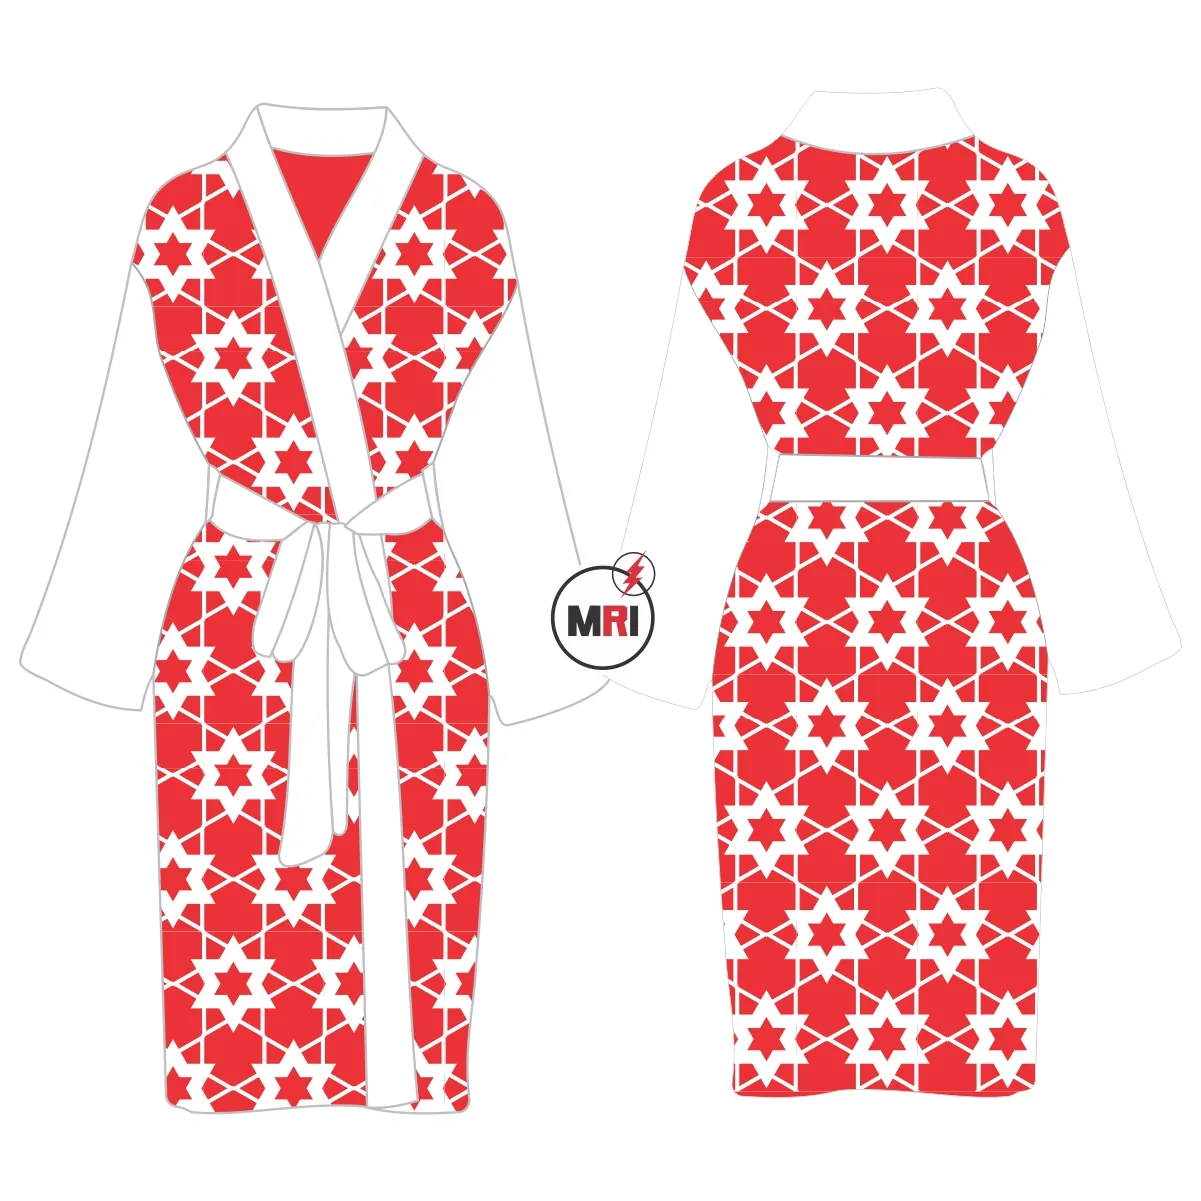 Setelan pakaian tidur wanita gaun sutra dibuat dicetak nyaman merah hitam putih kualitas tinggi jubah khusus gaun tidur wanita